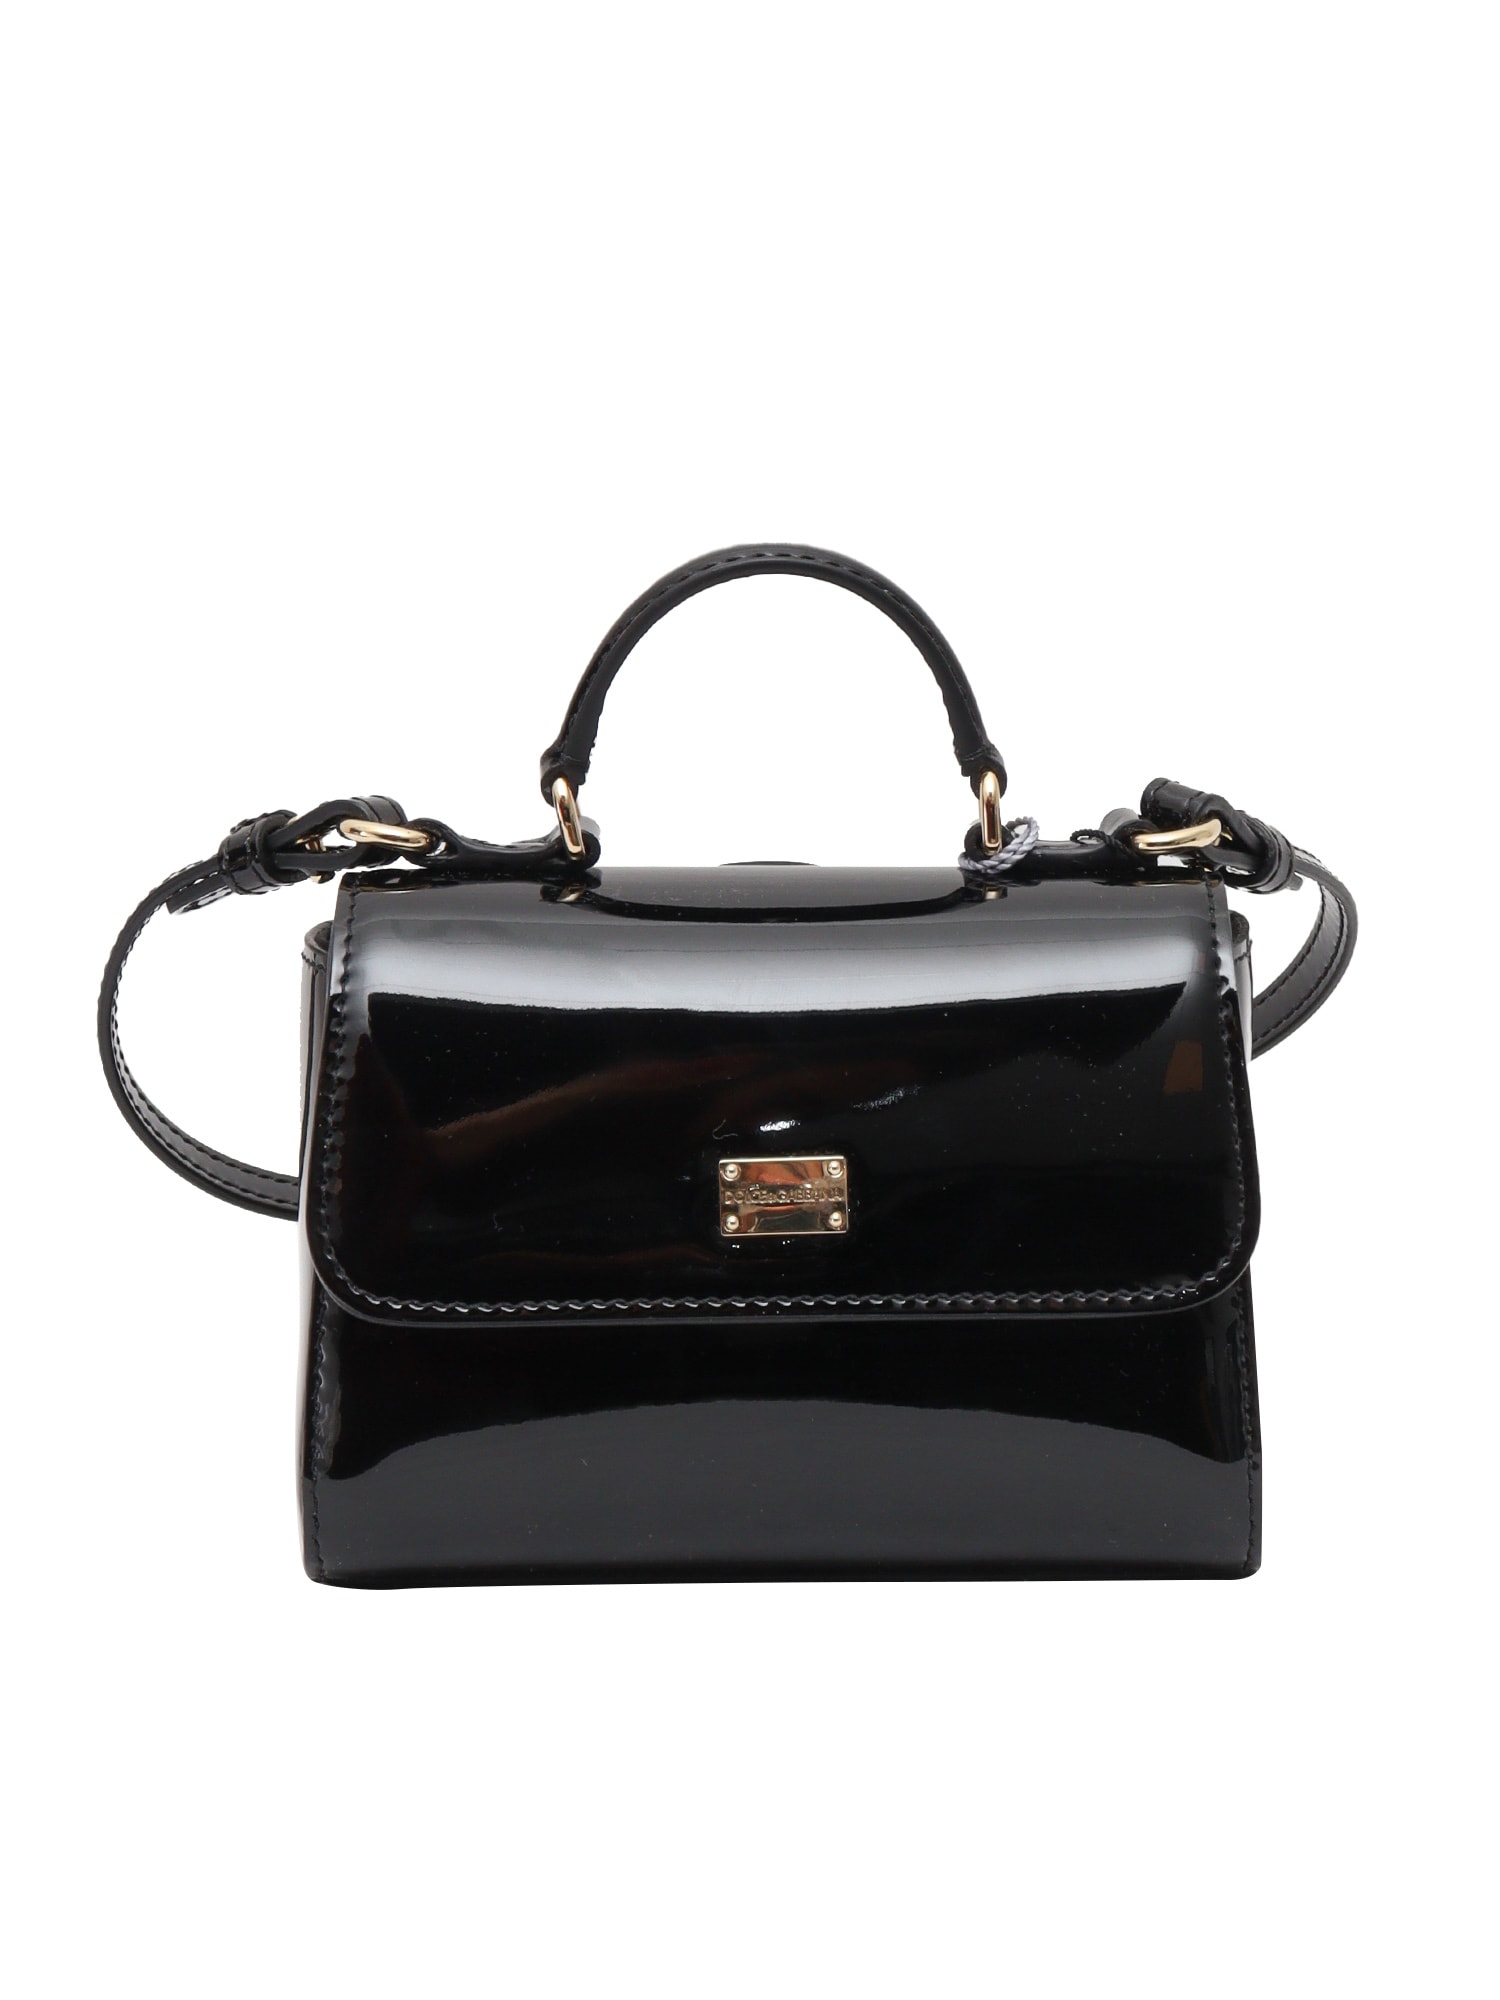 Dolce & Gabbana Patent Shoulder Bag